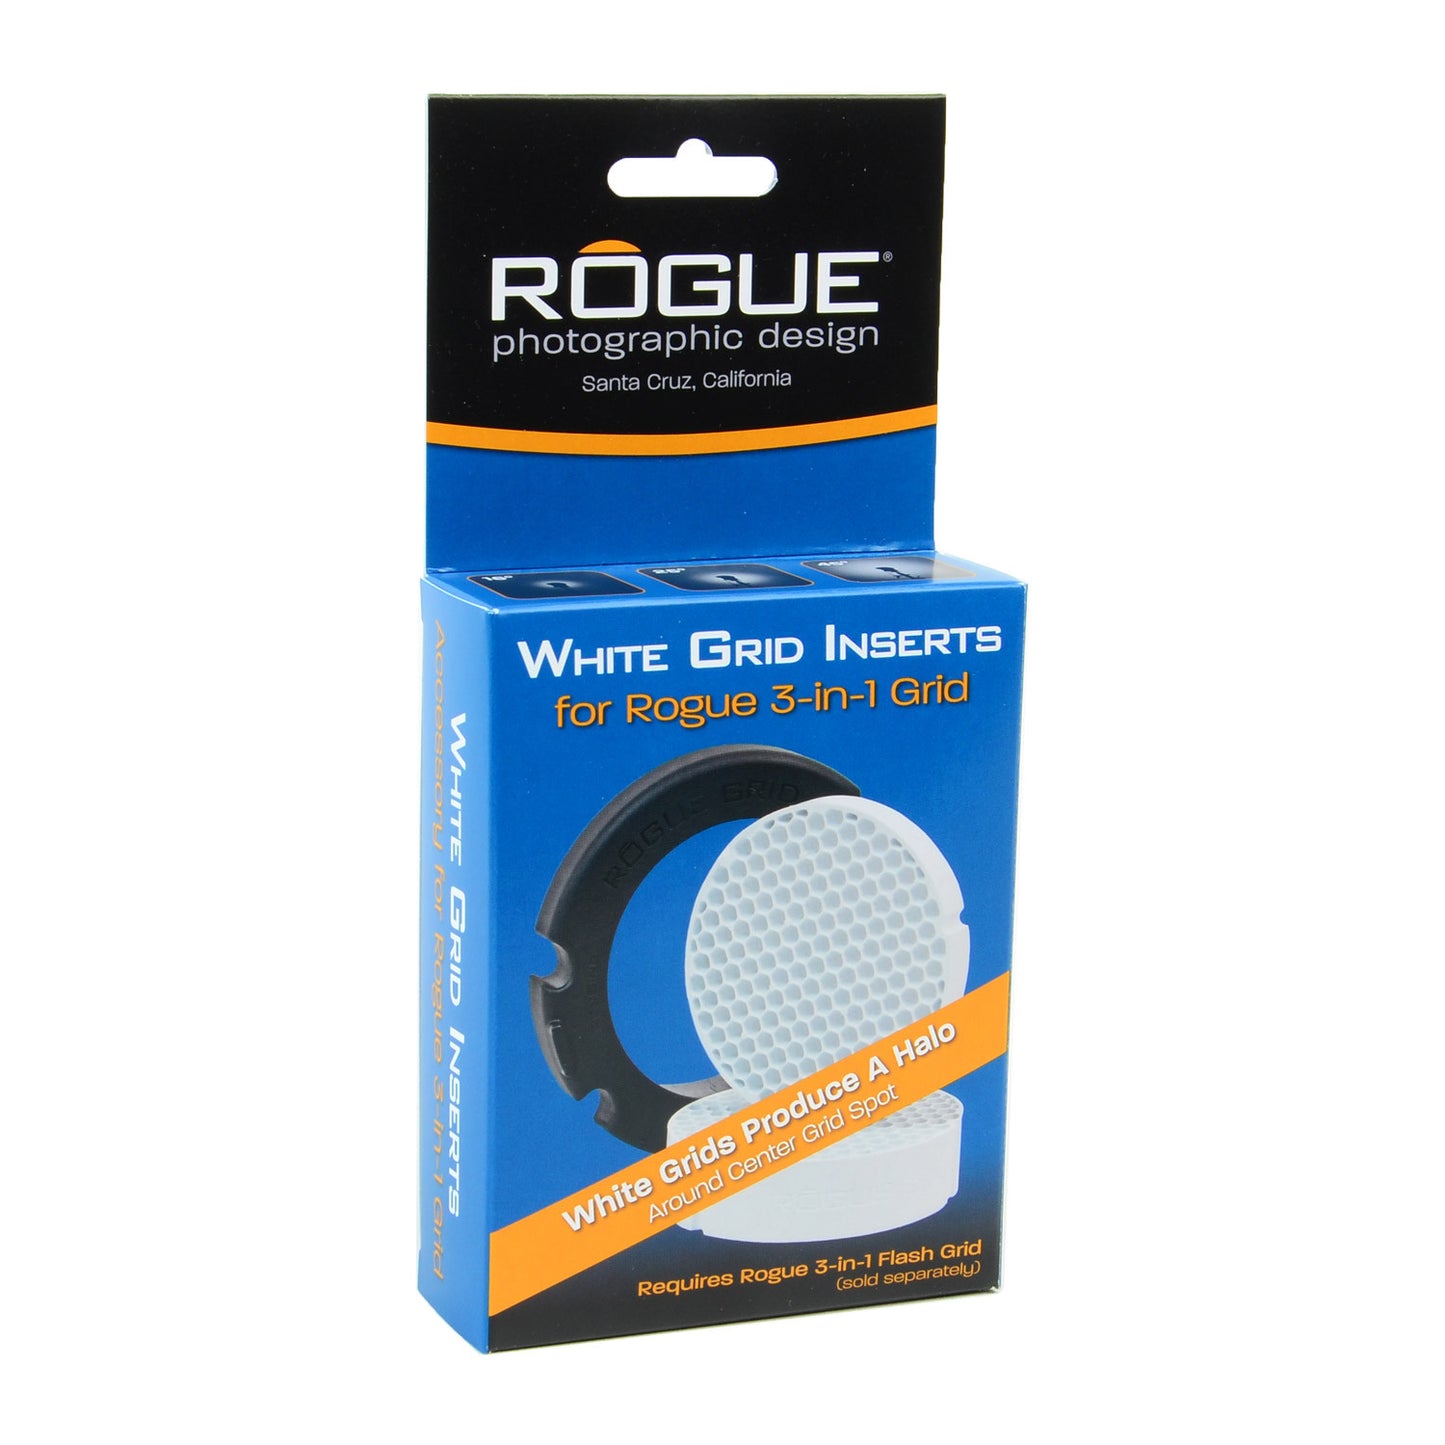 
                  
                    Inserciones de rejilla blanca para Rogue 3-in-1 Grid
                  
                